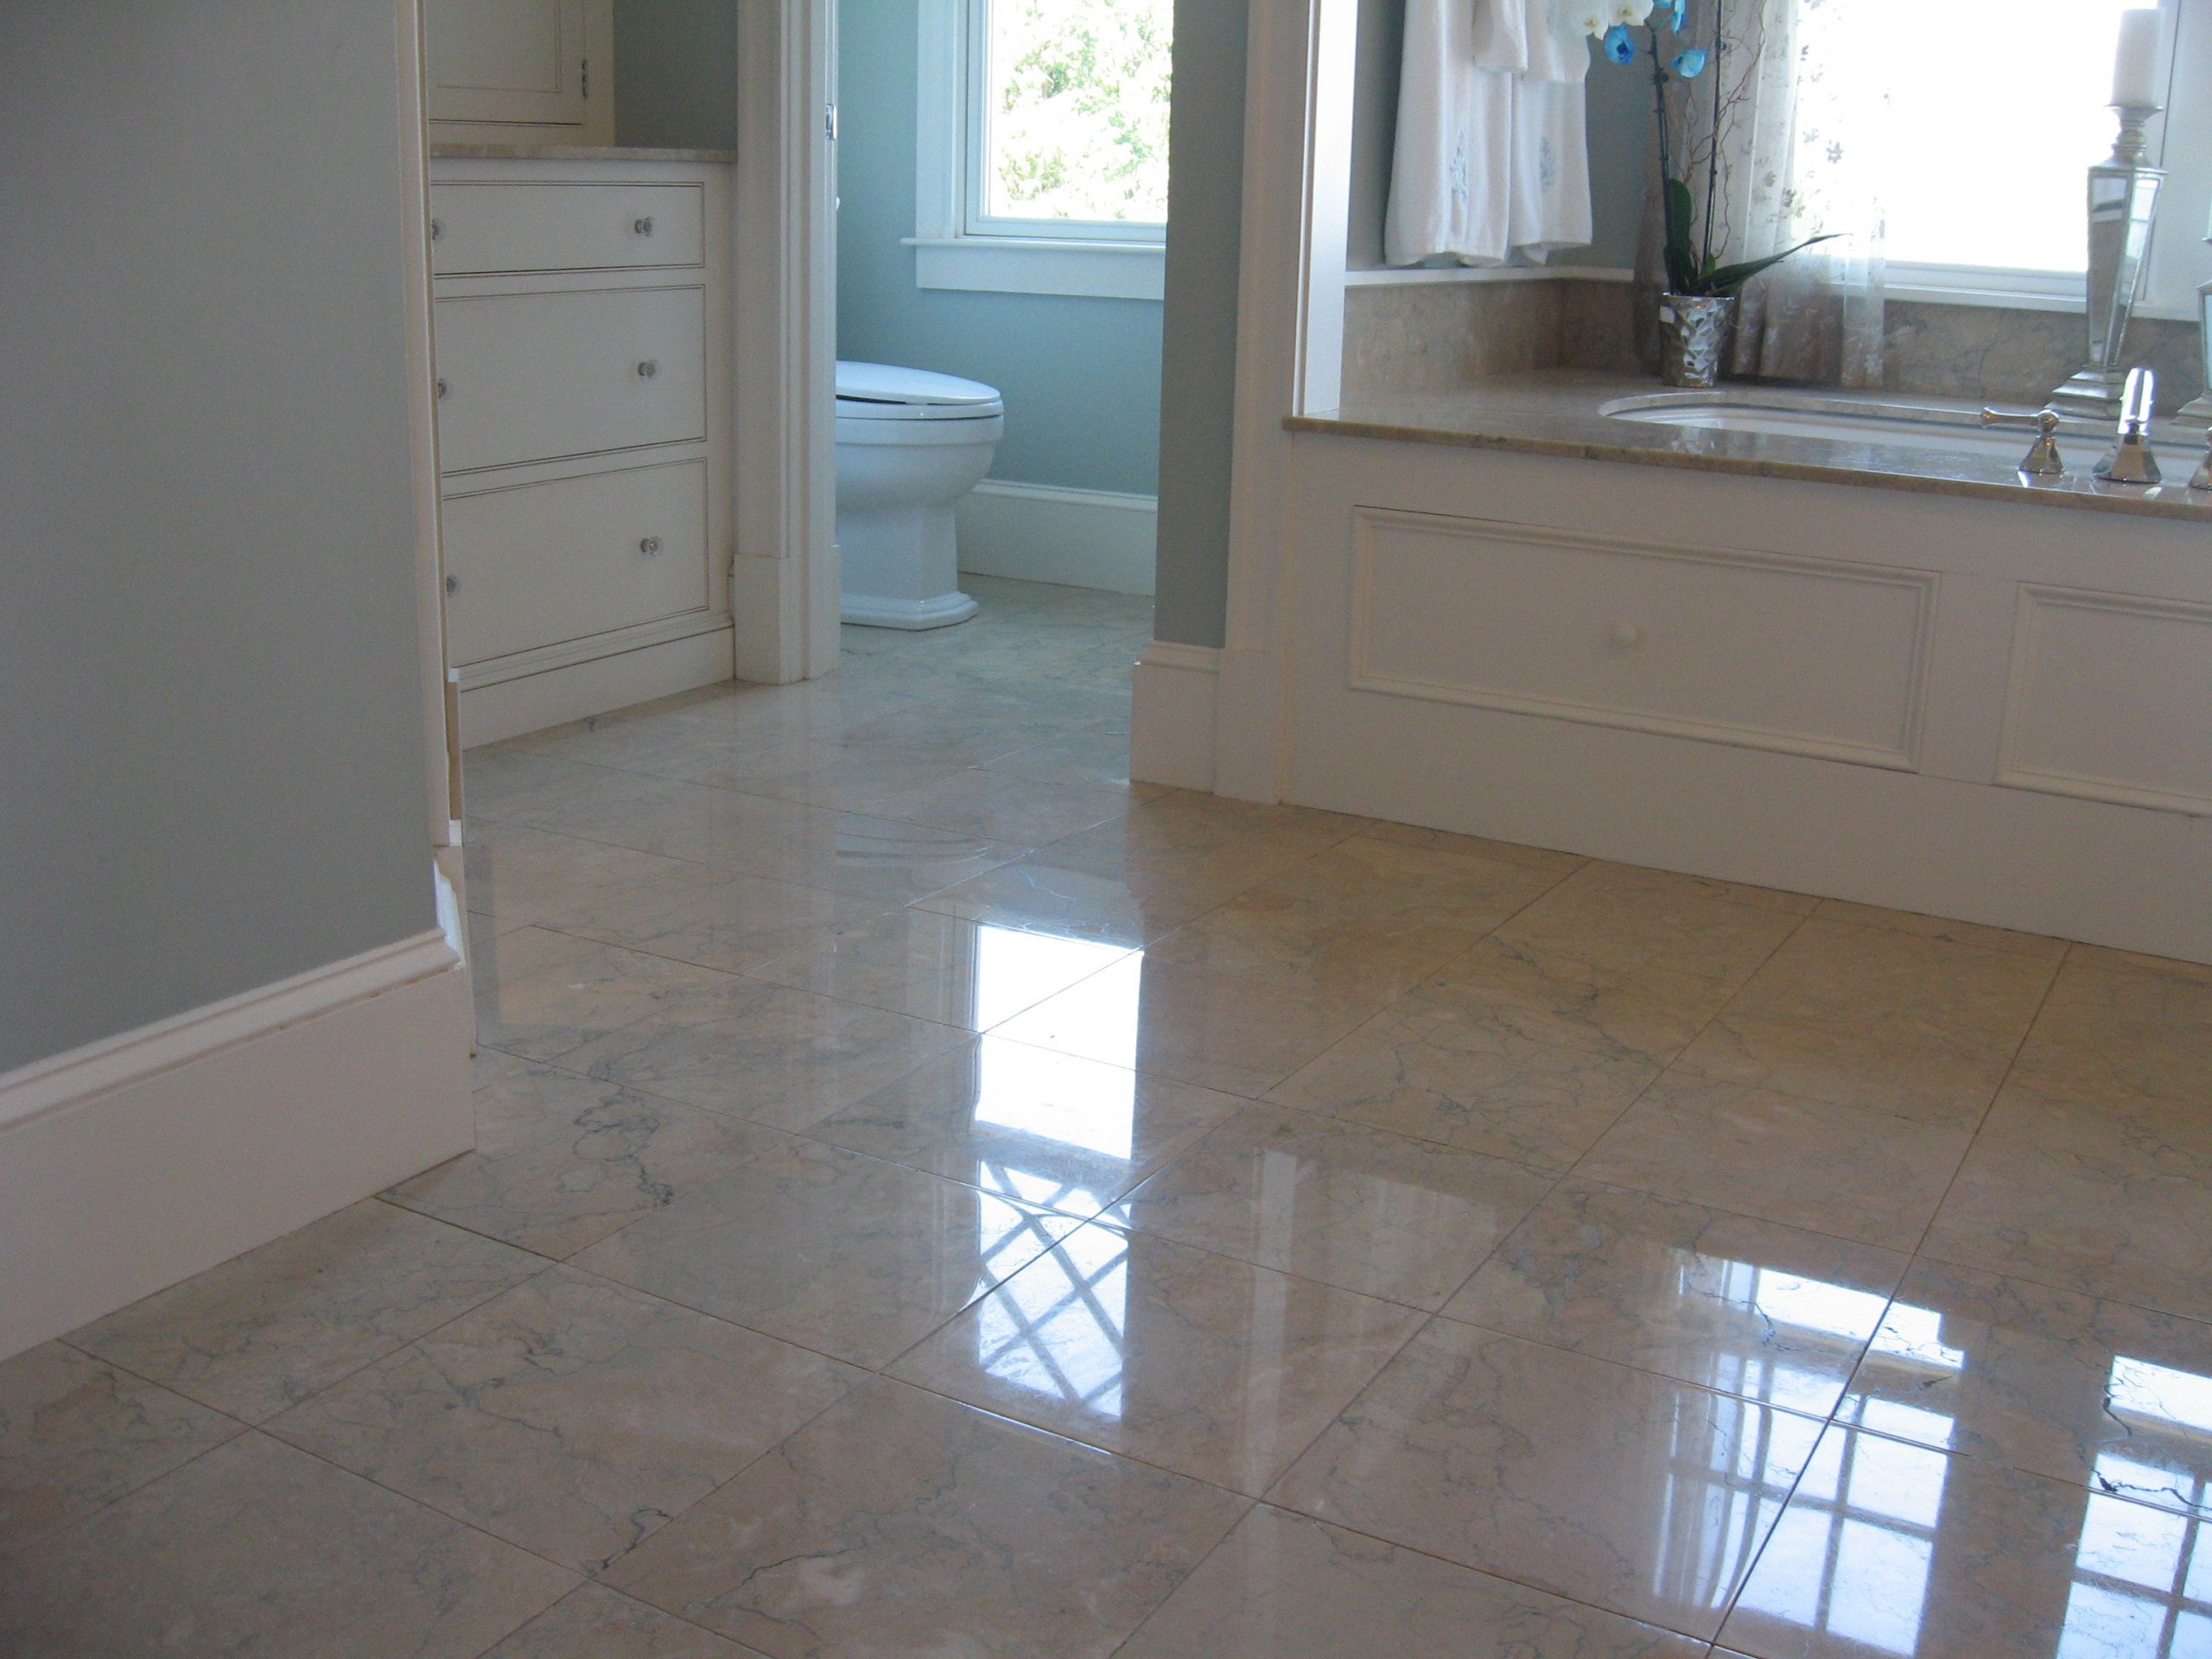 Marble Bathroom Floor Tiles
 30 great ideas for marble bathroom floor tiles